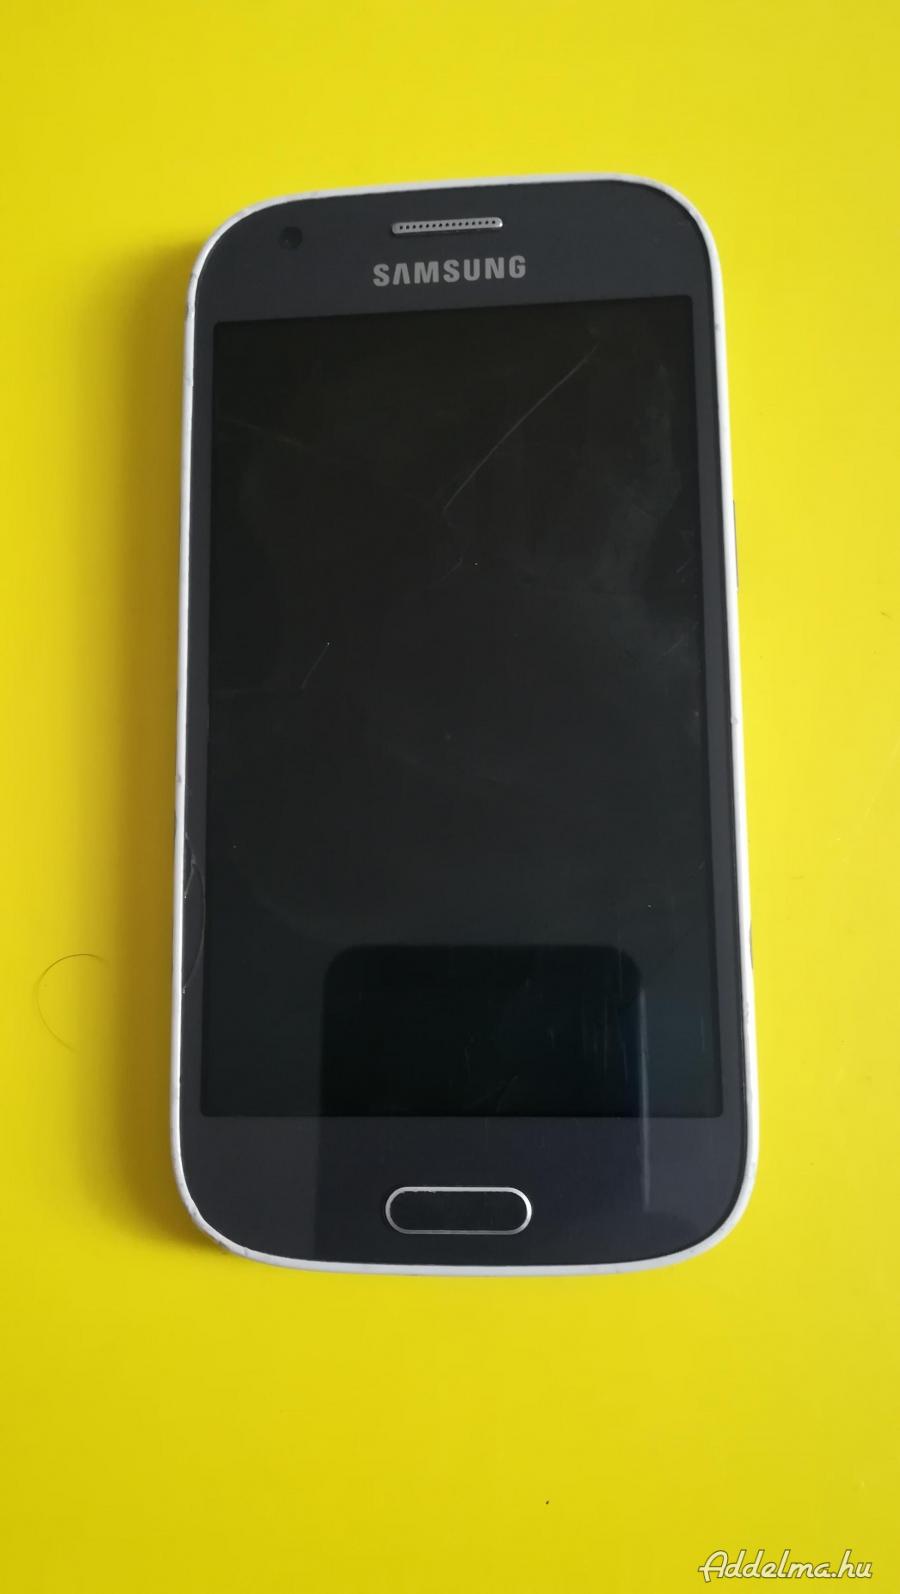 Samsung g357fz mobil törött kijelzős csak rezeg.